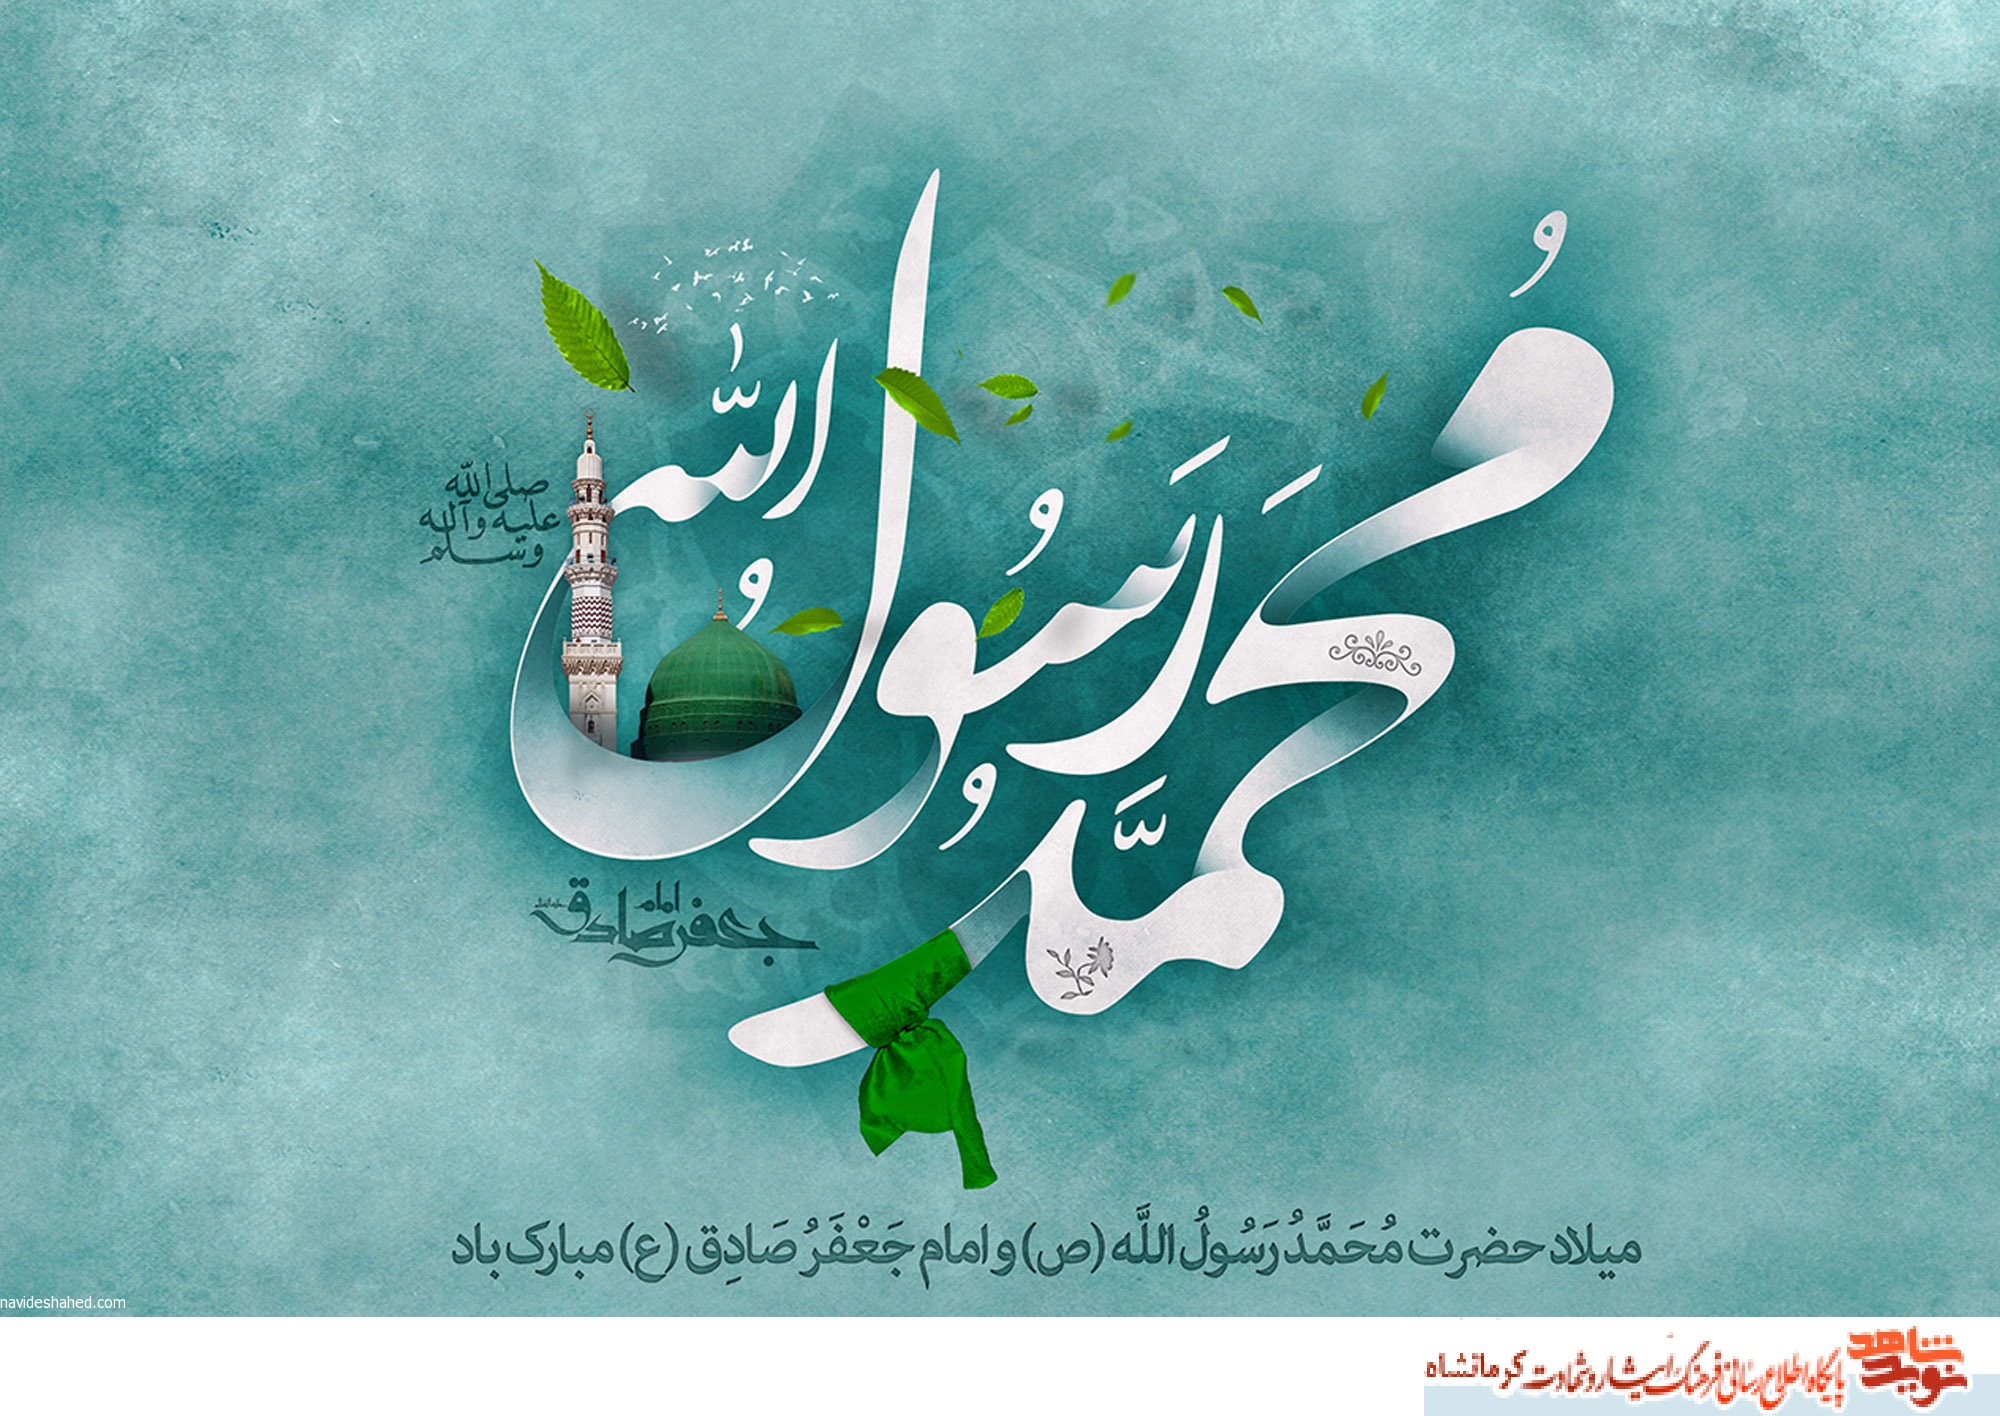 مراسم جشن میلاد پیامبر اکرم(ص) در کرمانشاه برگزار می شود